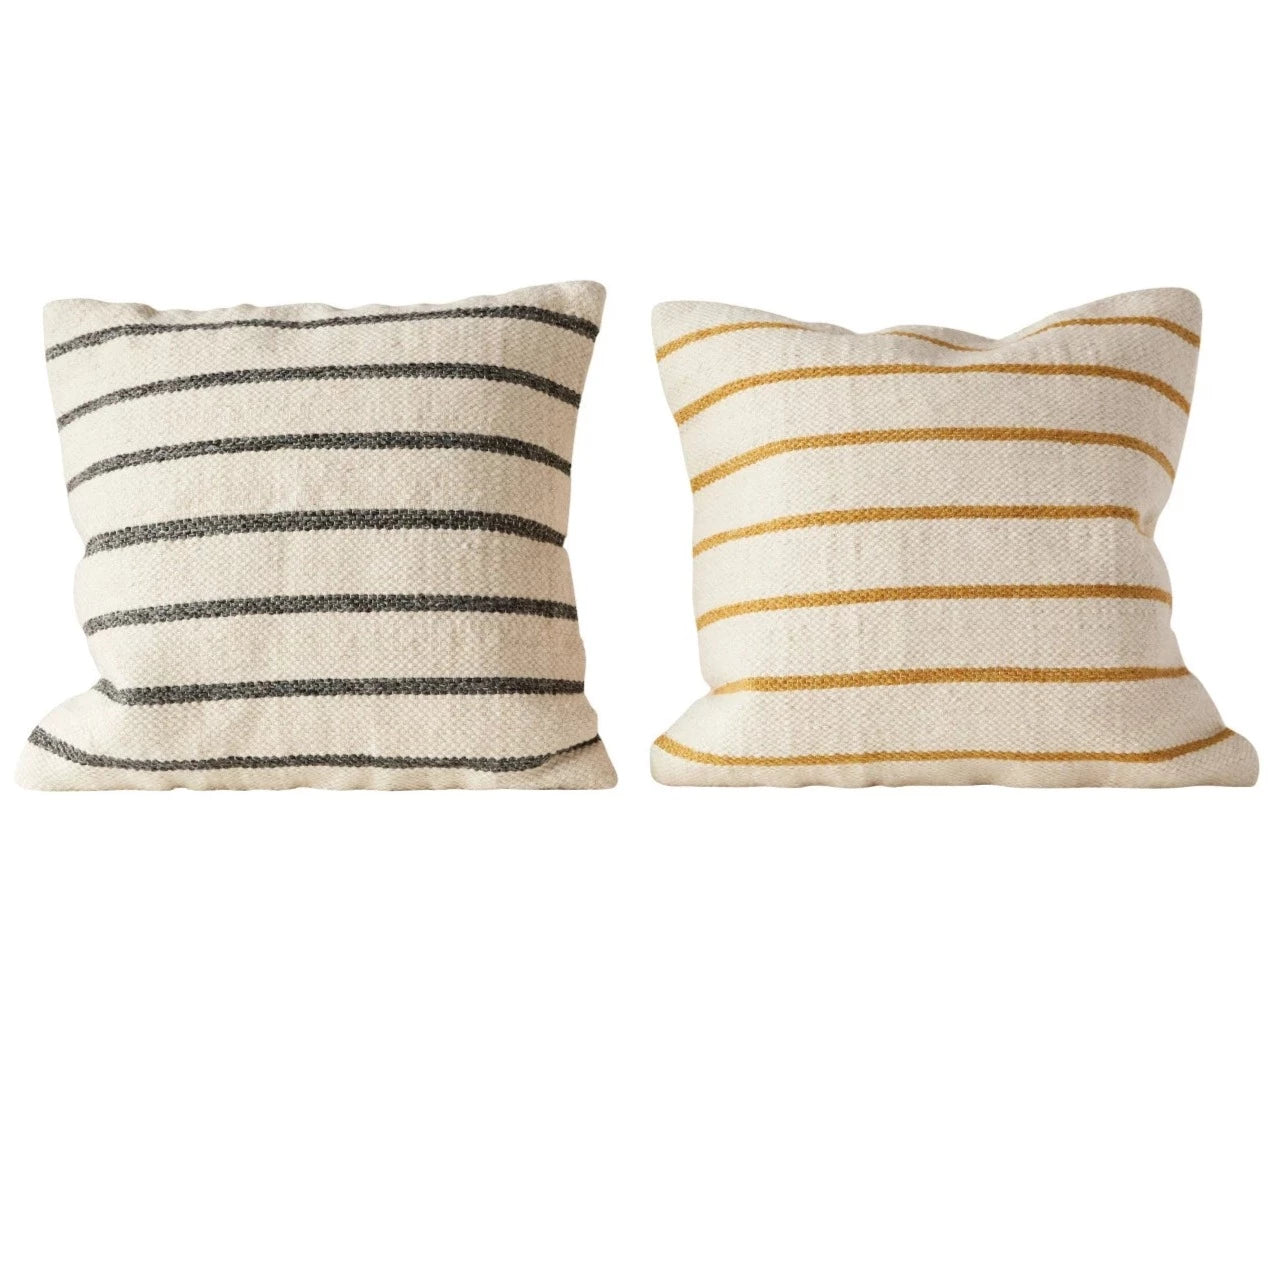 Woven Wool Blend Striped Pillow